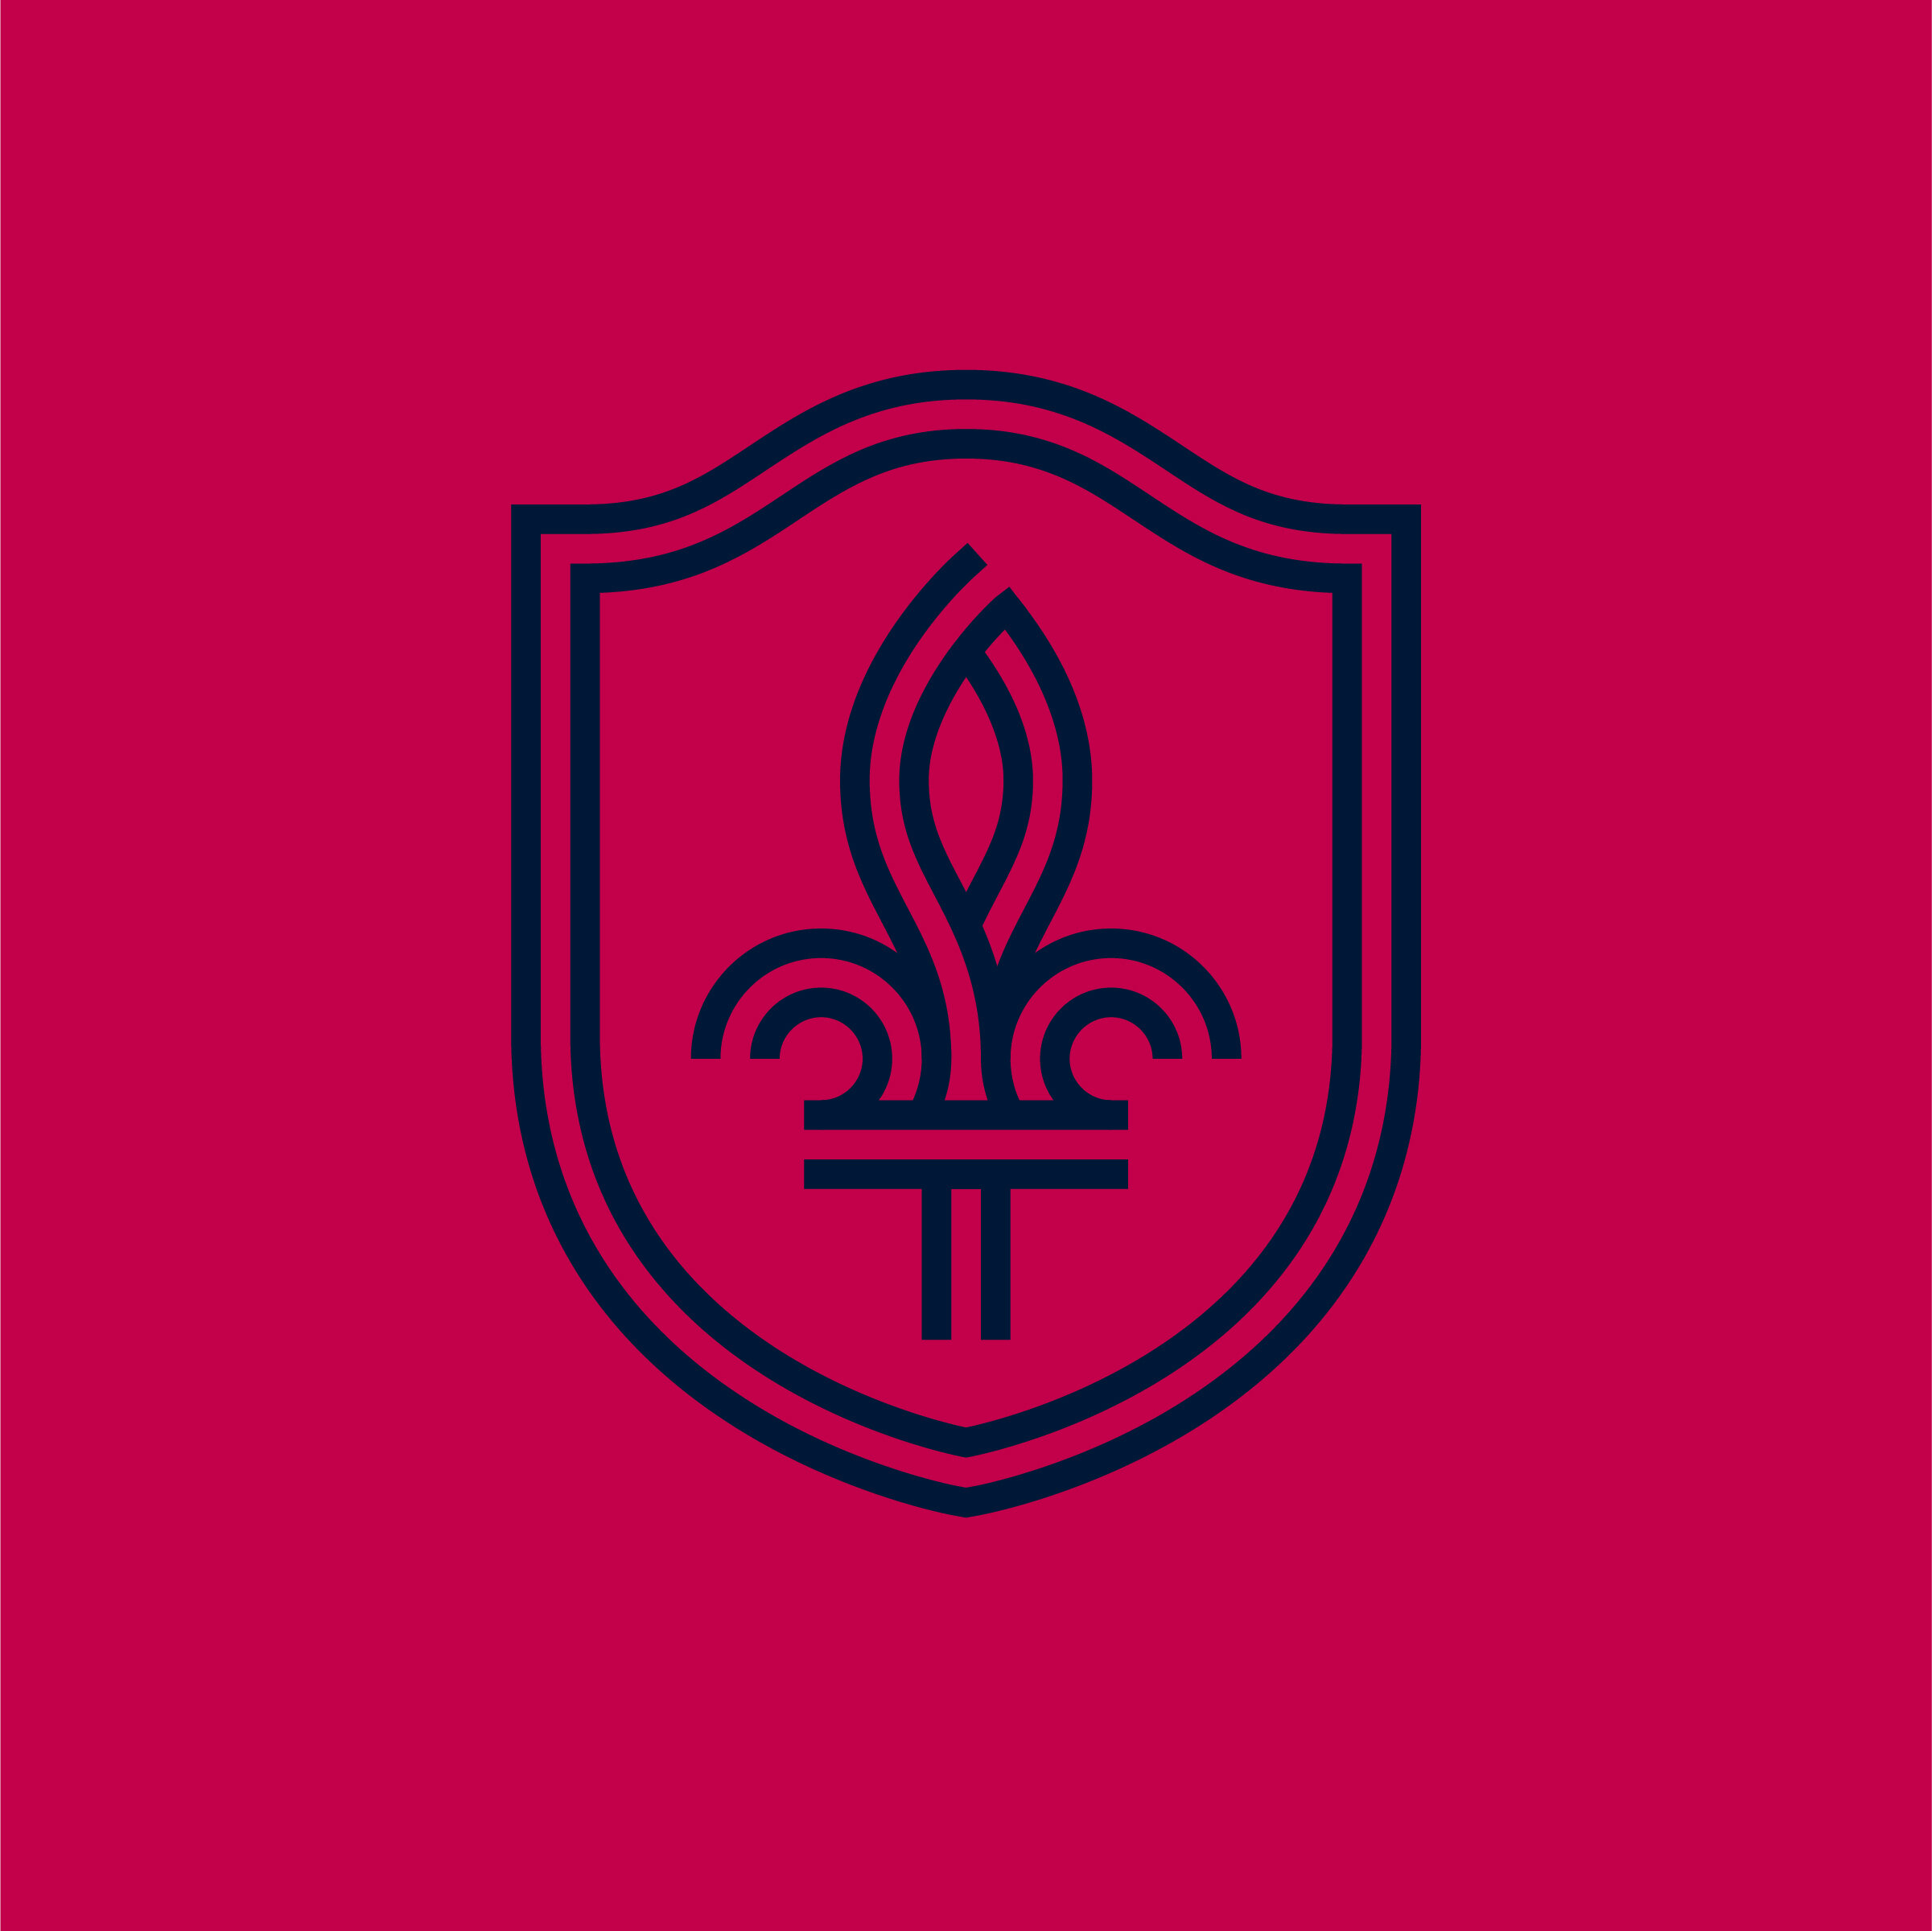  St Louis City SC Flag, Licensed Flag 5ftx 3ft